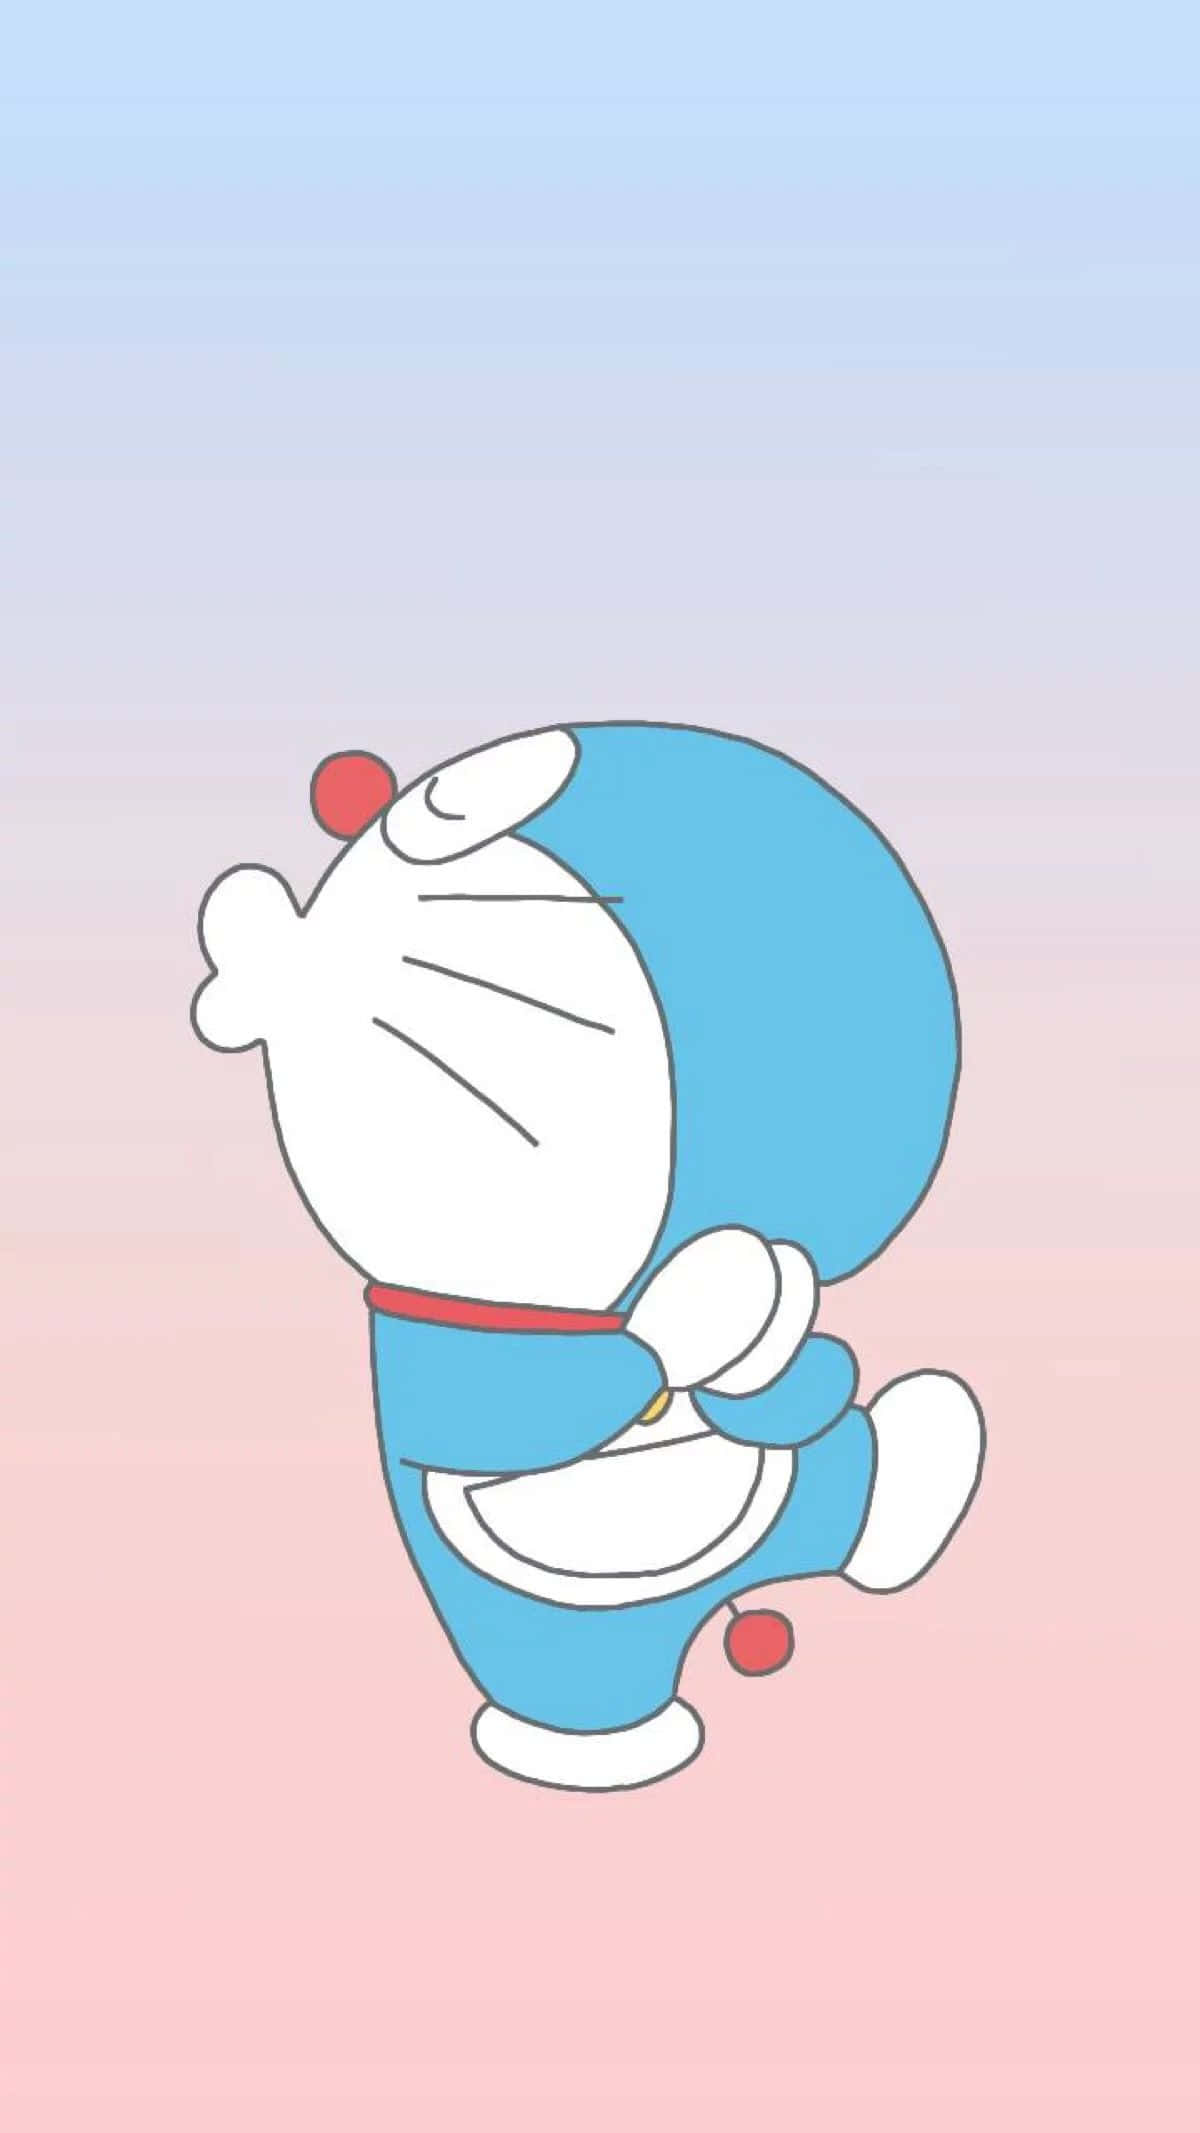 Doraemonbaggrunde - Doraemon Baggrunde